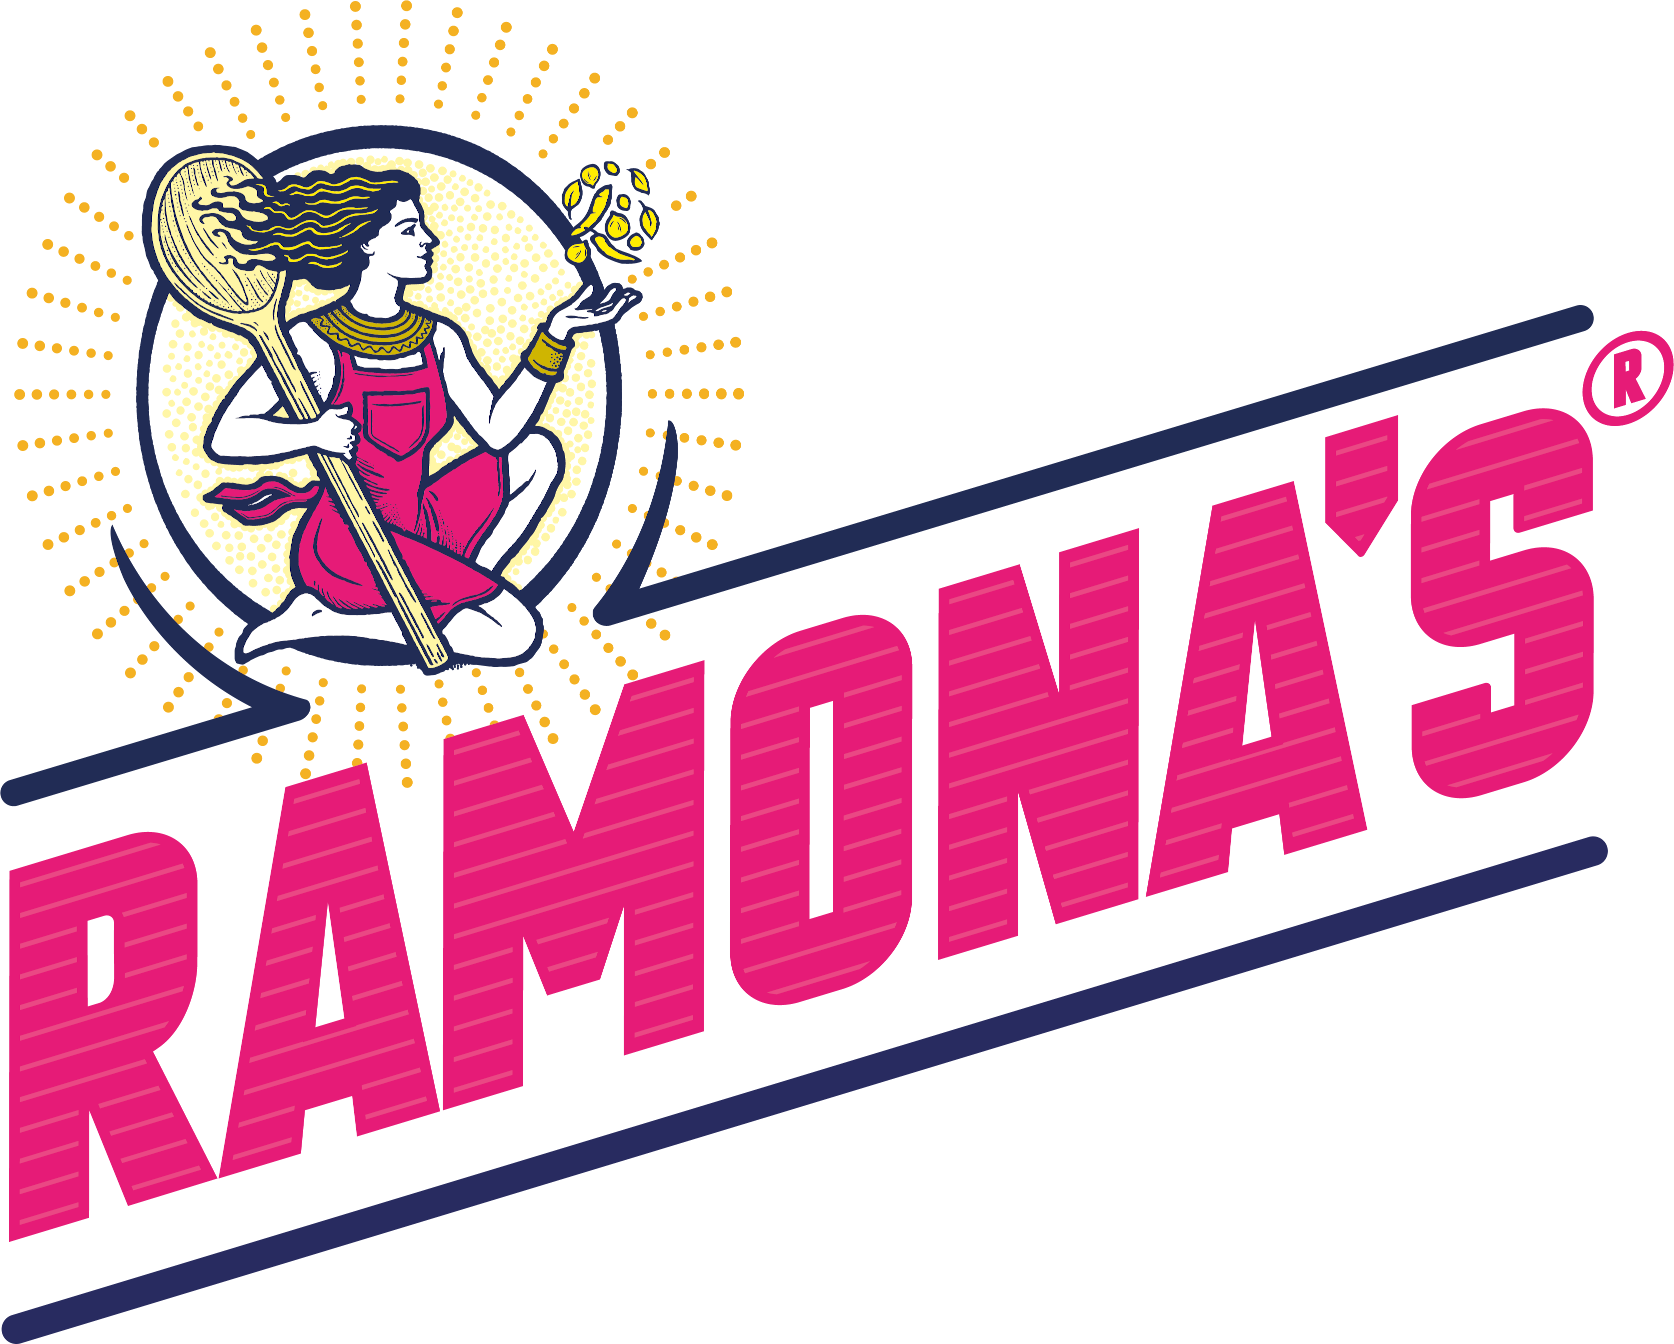 Ramonas